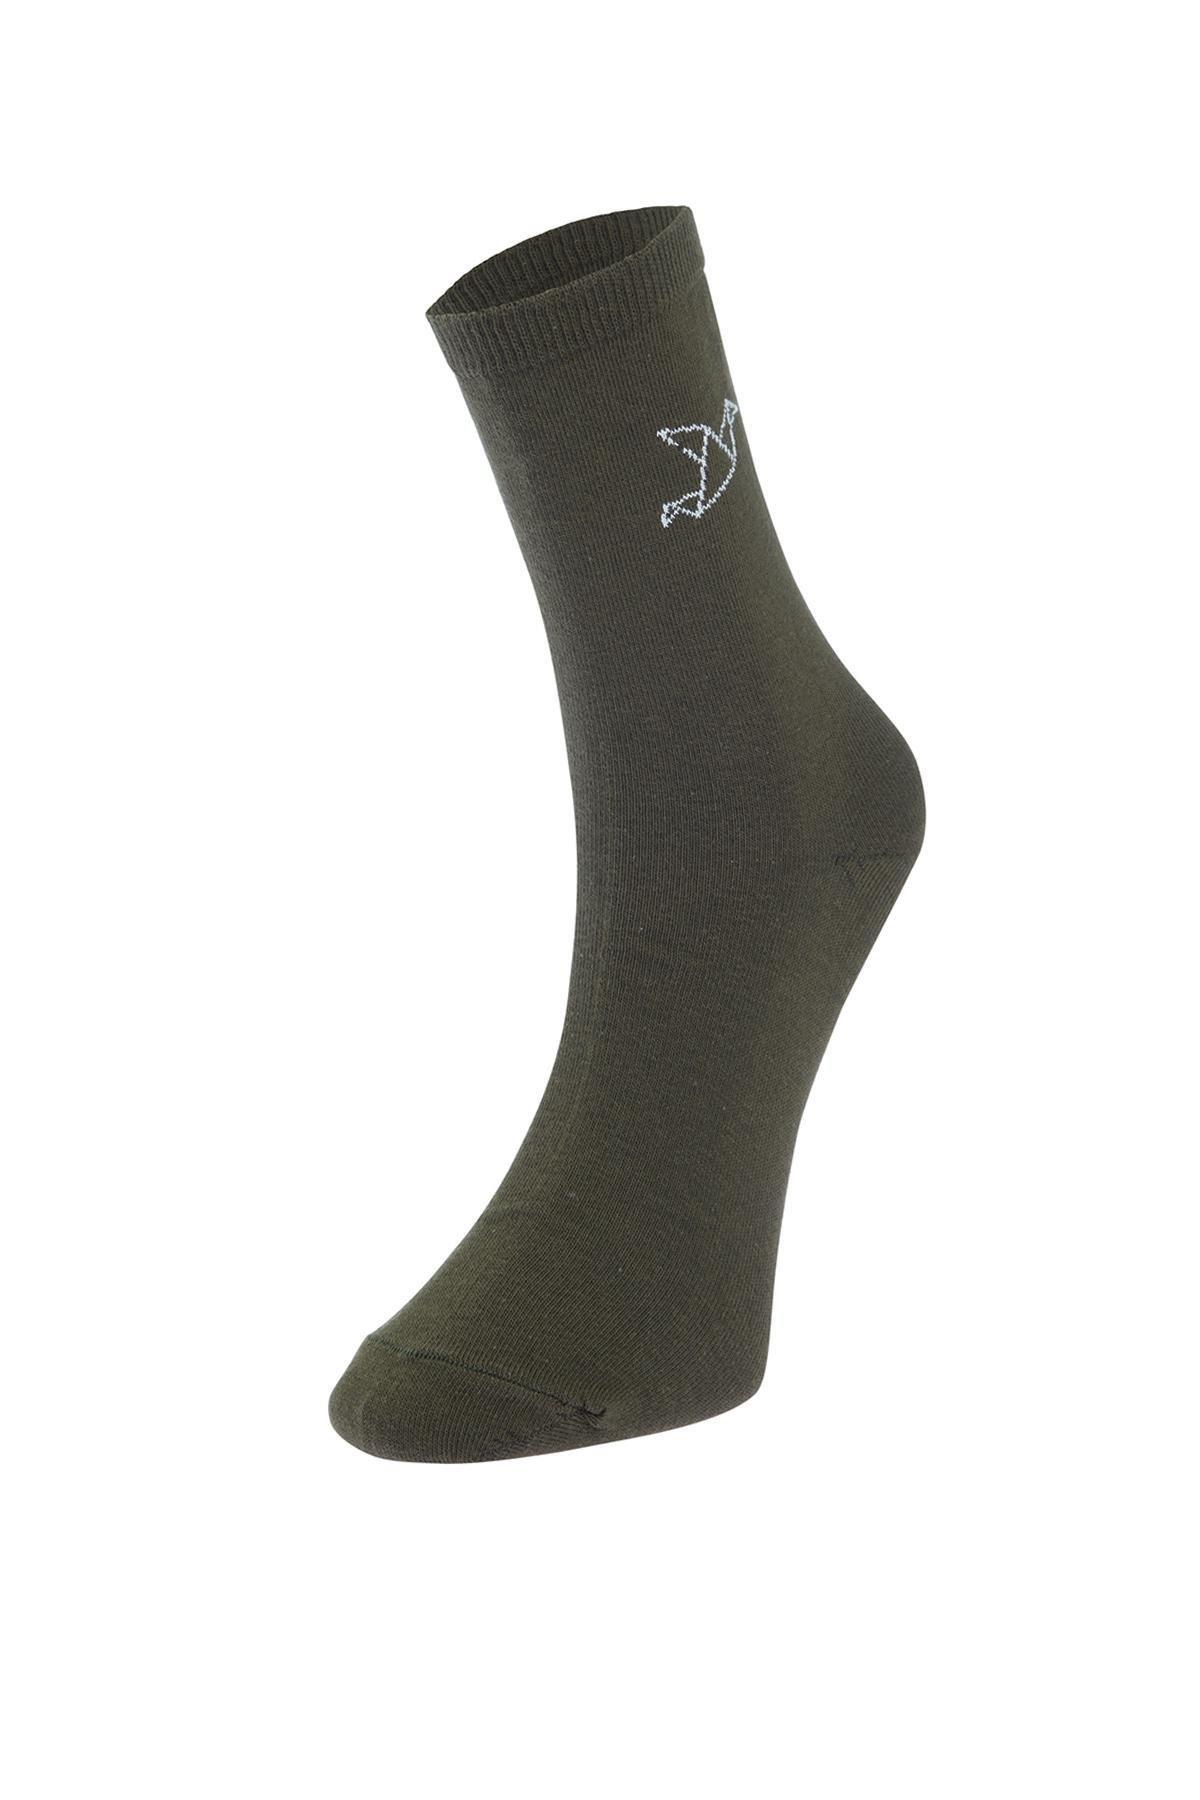 Trendyol - Multicolour Patterned Long Socks, Set Of 6